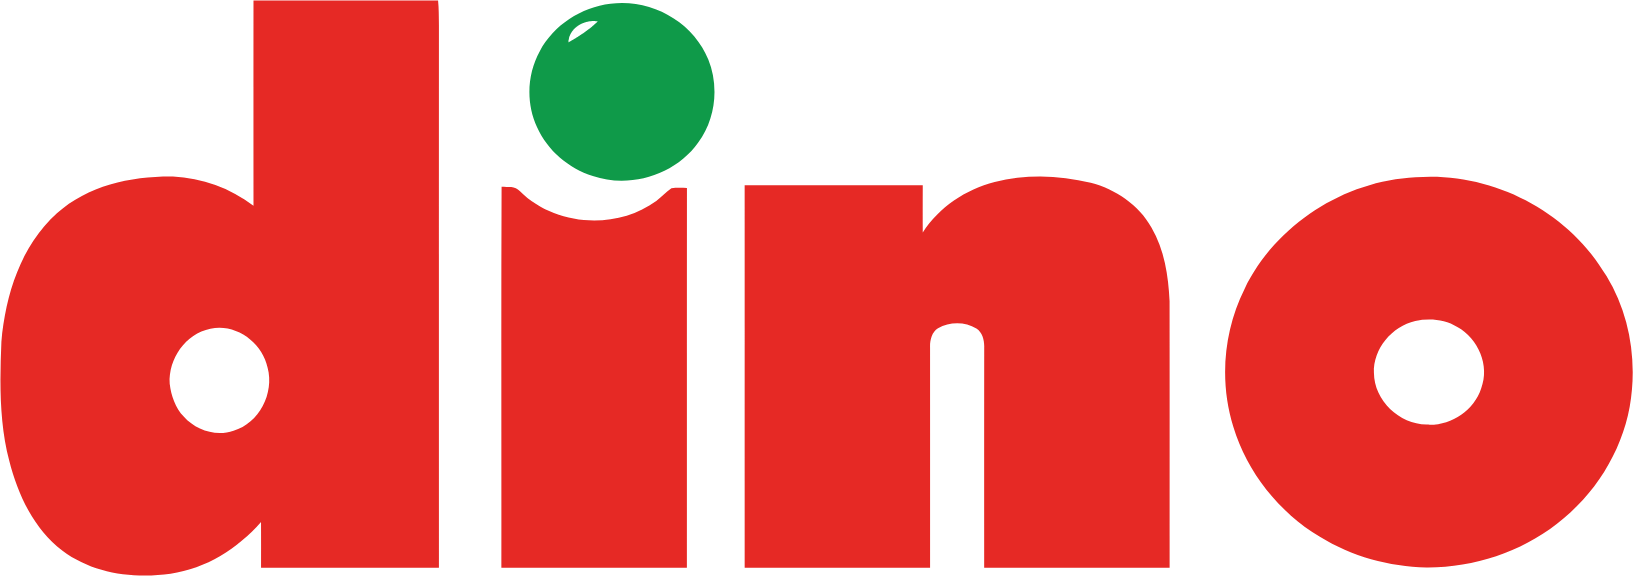 Dino Polska logo (PNG transparent)